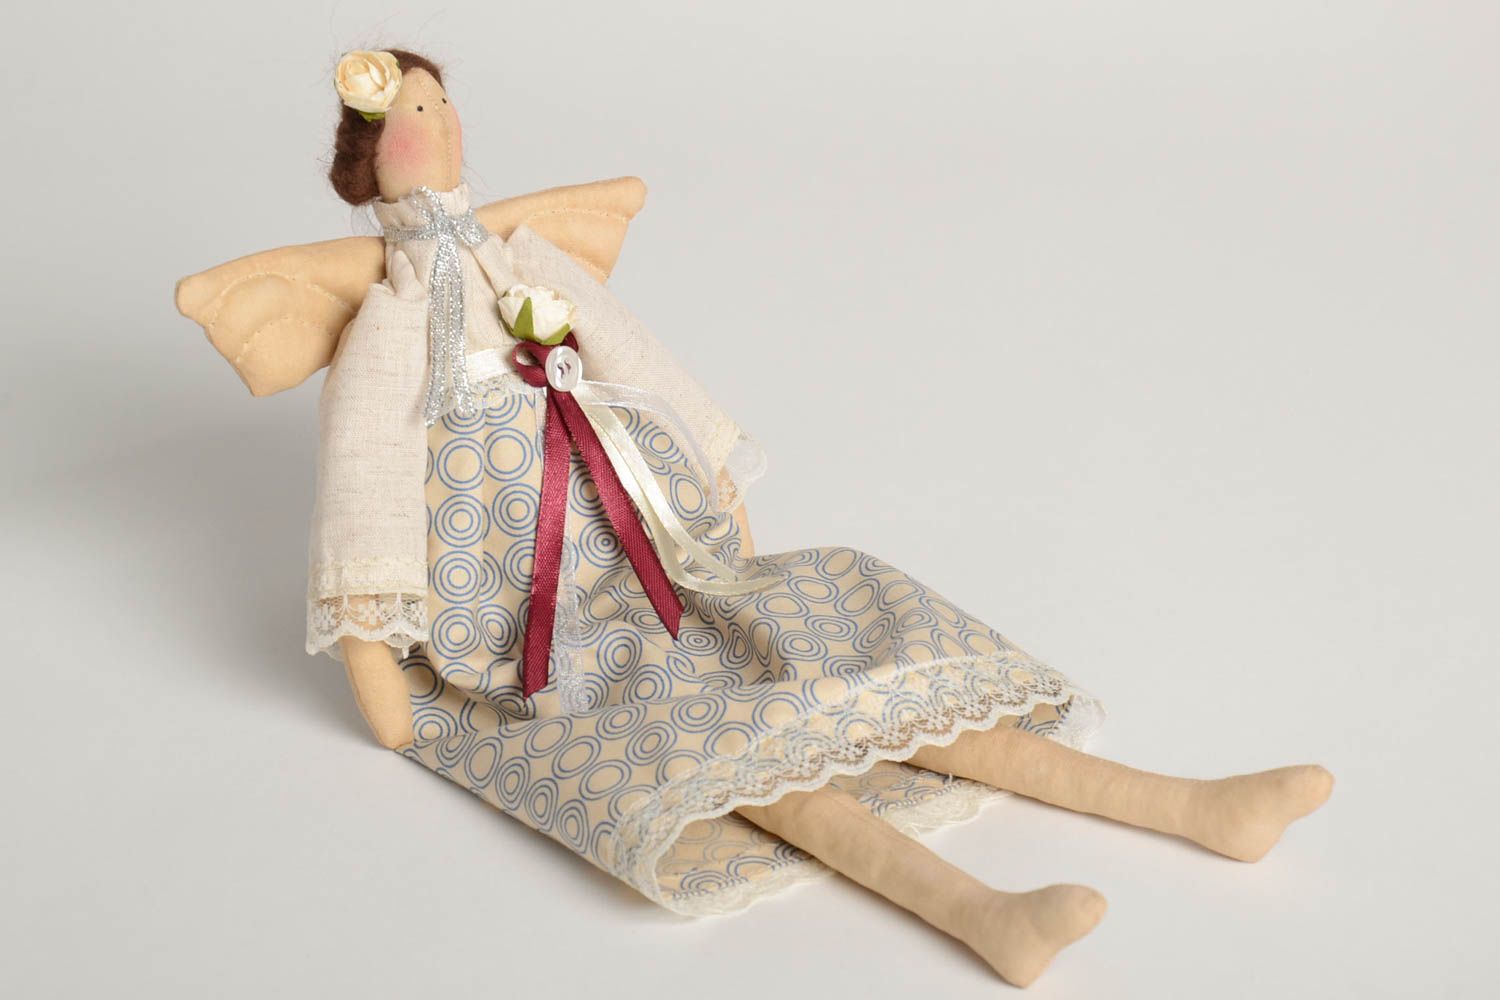 Кукла ручной работы кукла из ткани мягкая кукла Ангел очень оригинальный  фото 2